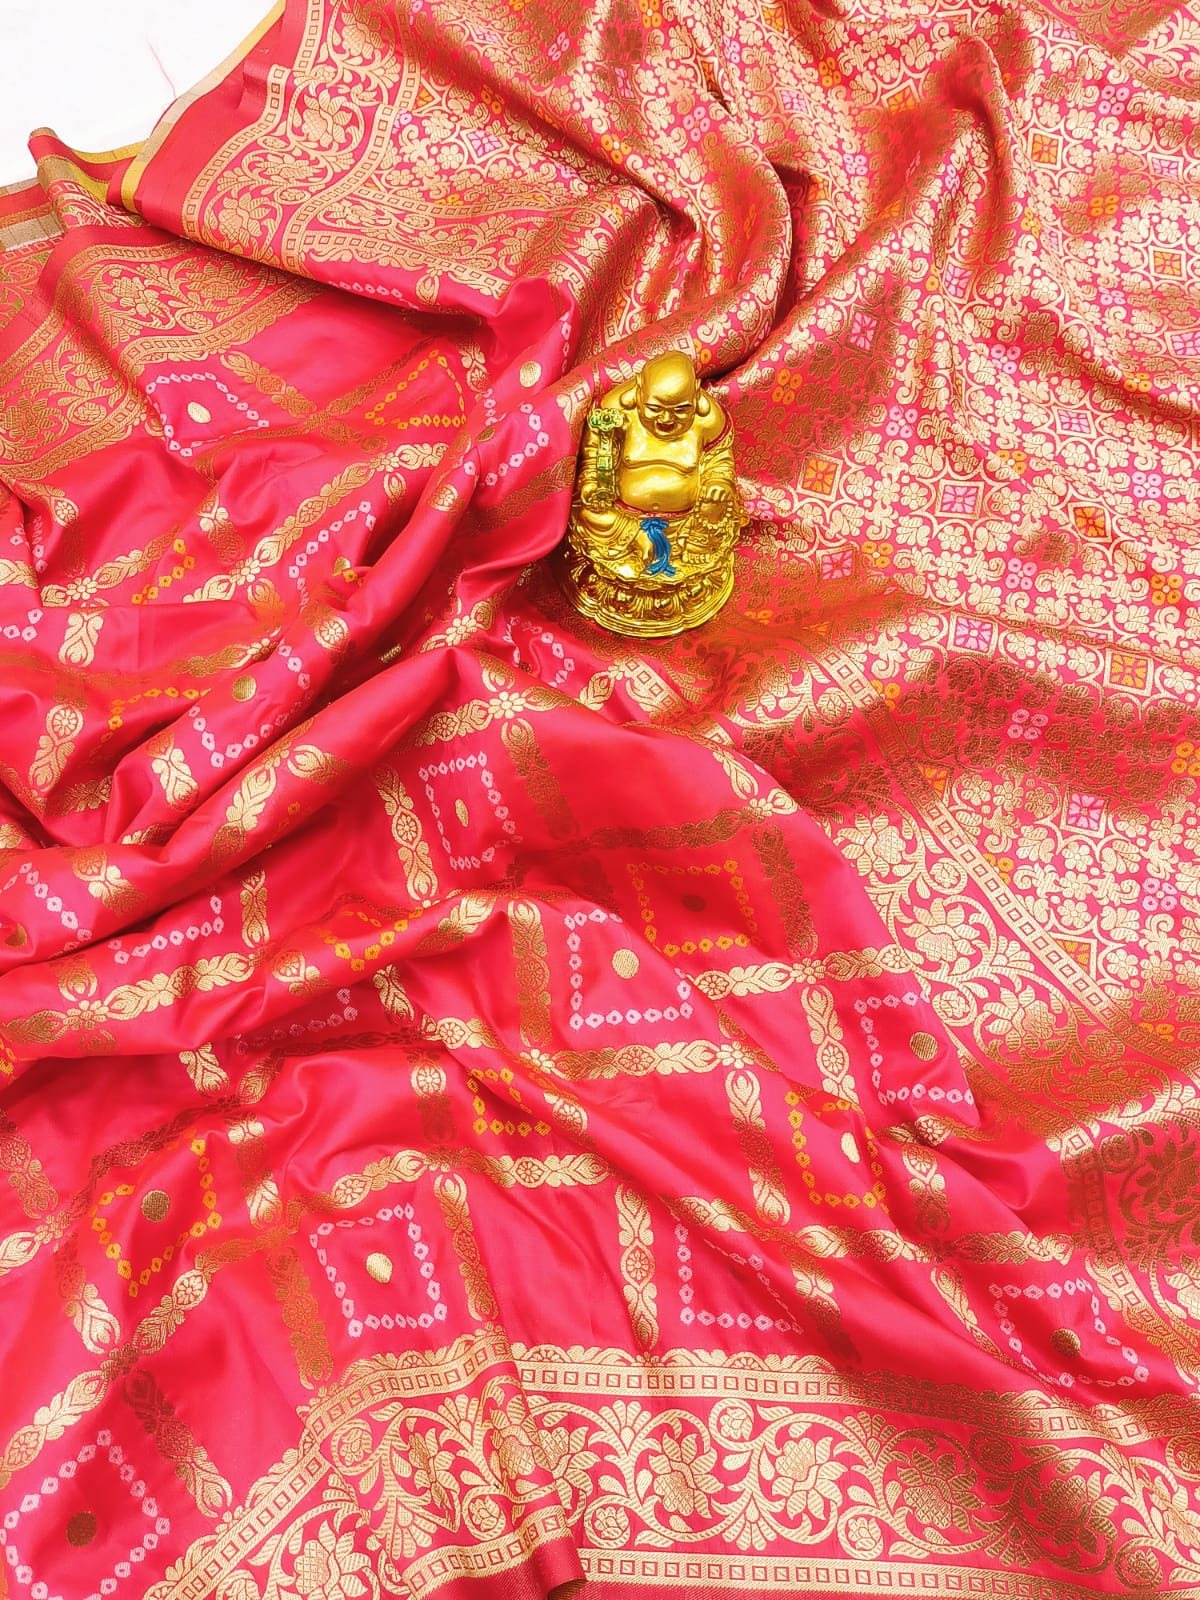 Exquisite Pink Banarasi Silk Saree With Traditional Blouse Piece